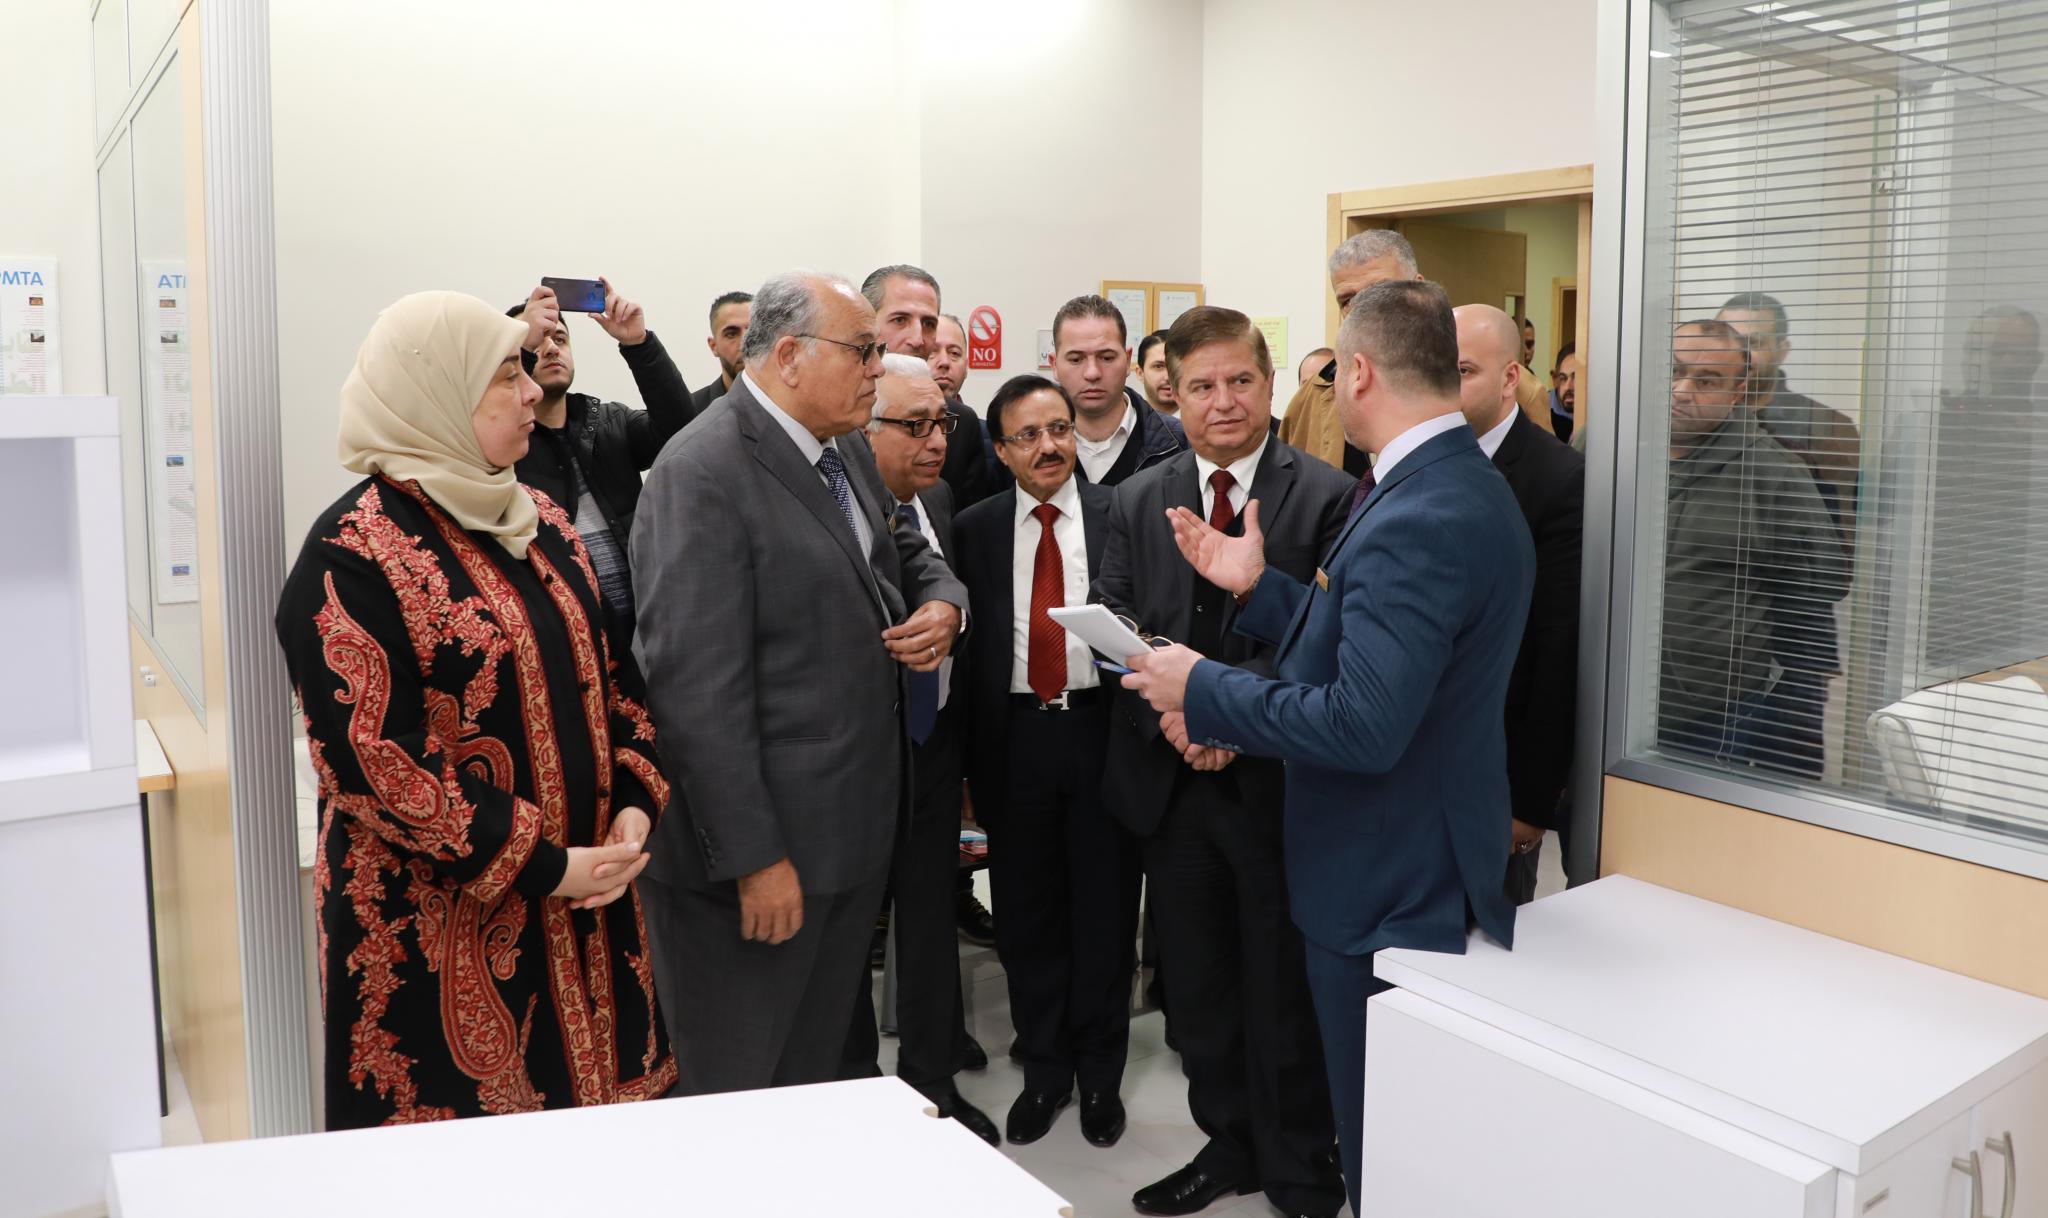 افتتاح المركز الطبي في حرم الجامعة في رام الله